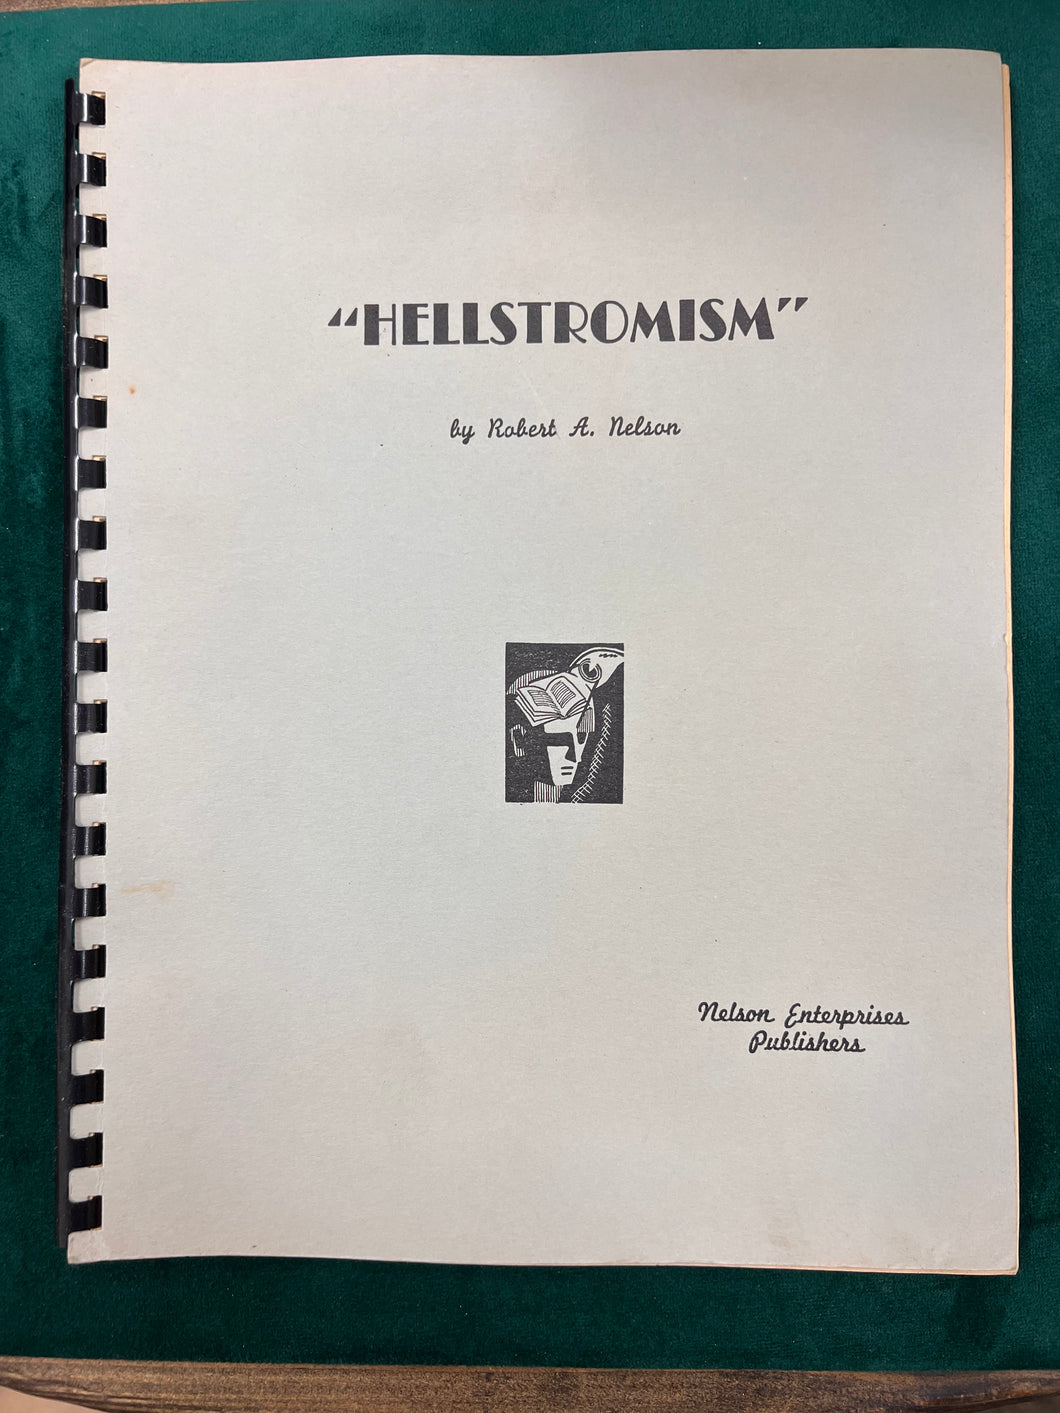 Hellstromism by Robert A. Nelson